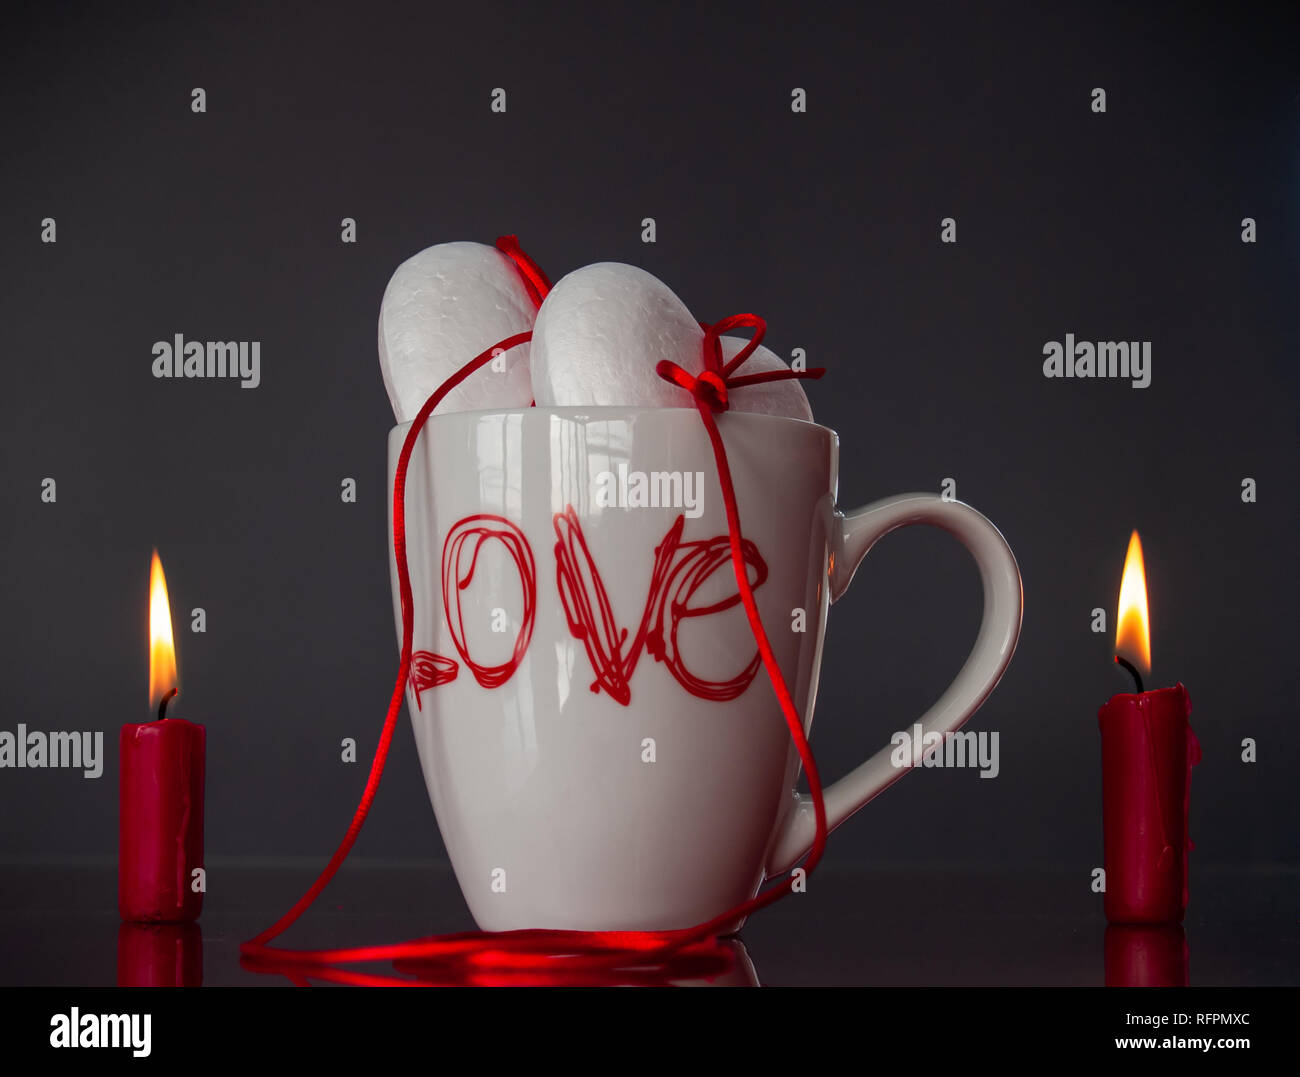 Concetto di amore poliespan due cuori uniti con un filo rosso che simboleggia la leggenda del filo rosso su una tazza colazione e due rosso acceso candele Foto Stock